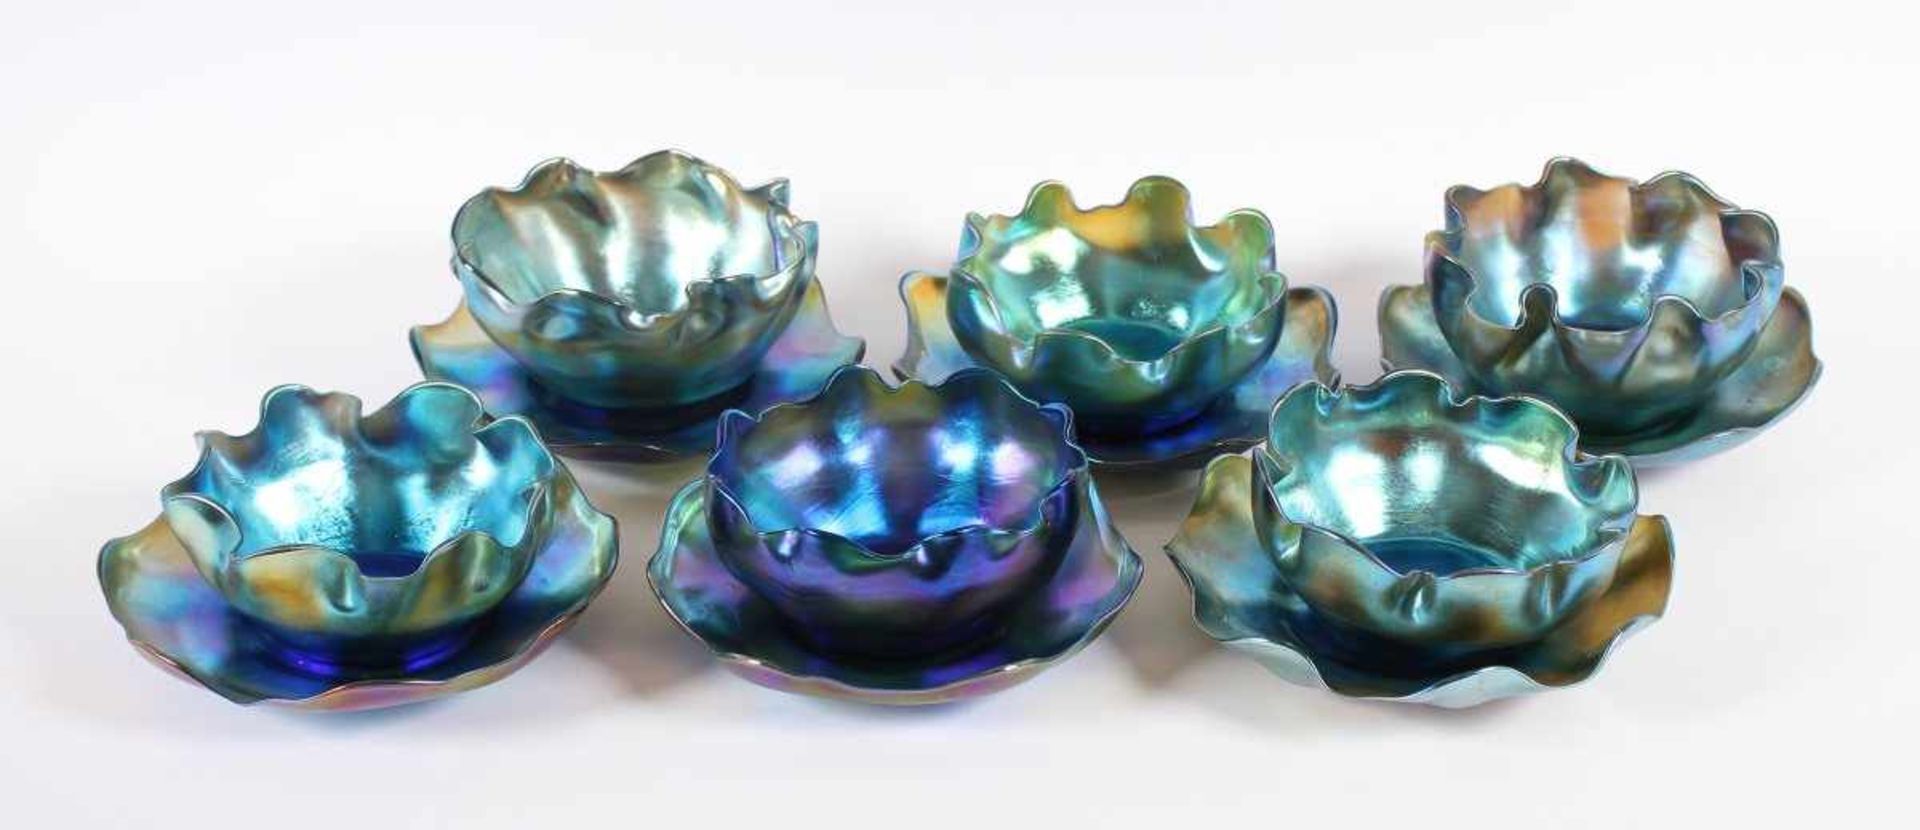 SATZ VON SECHS FINGERSCHALEN MIT UNTERTELLERN, farbloses Glas, sog. Favrile-Glas, violettblau